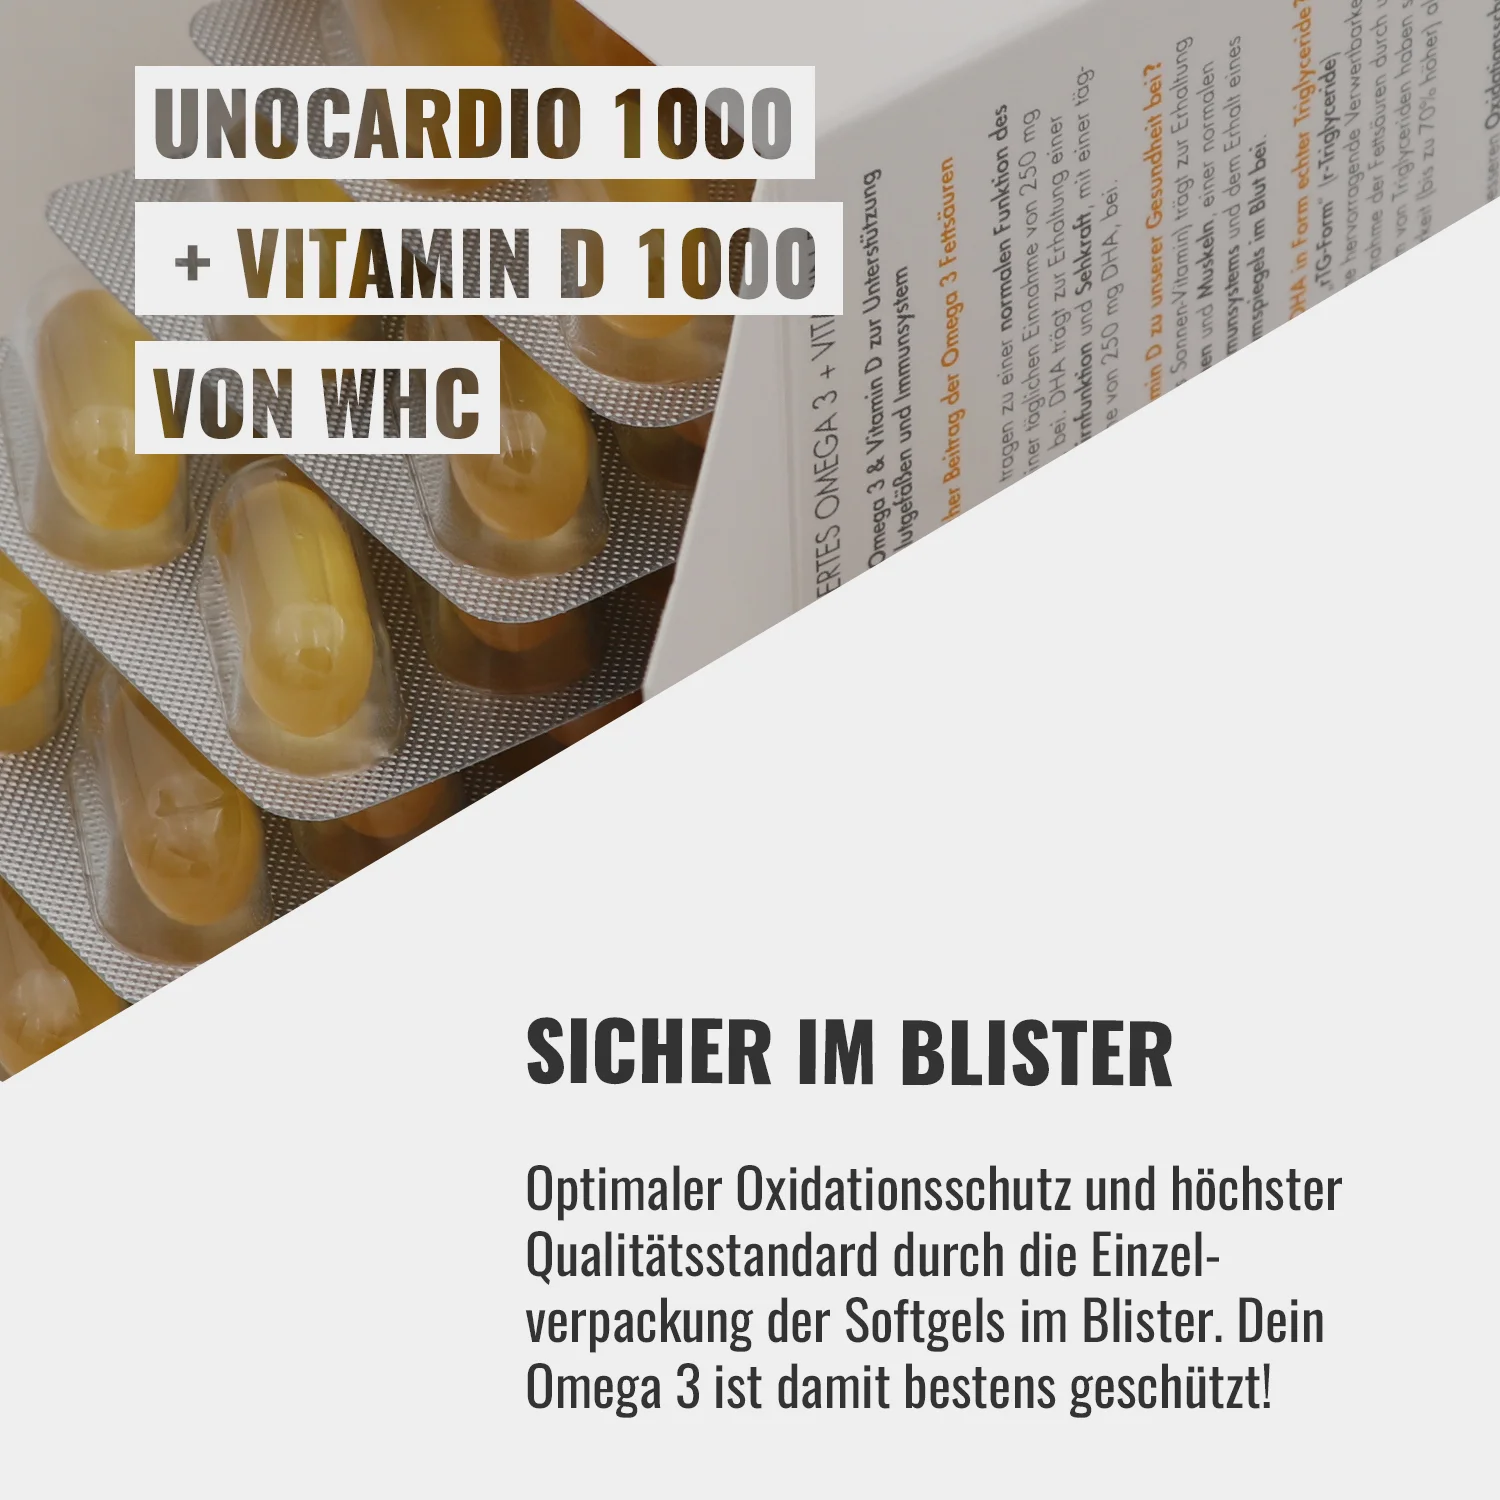 UNOCARDIO 1000 + VITAMIN D 1000 von WHC | SICHER IM BLISTER - Optimaler Oxidationsschutz und höchster Qualitätsstandard durch die Einzelverpackung der Softgels im Blister. Dein Omega 3 ist damit bestens geschützt!